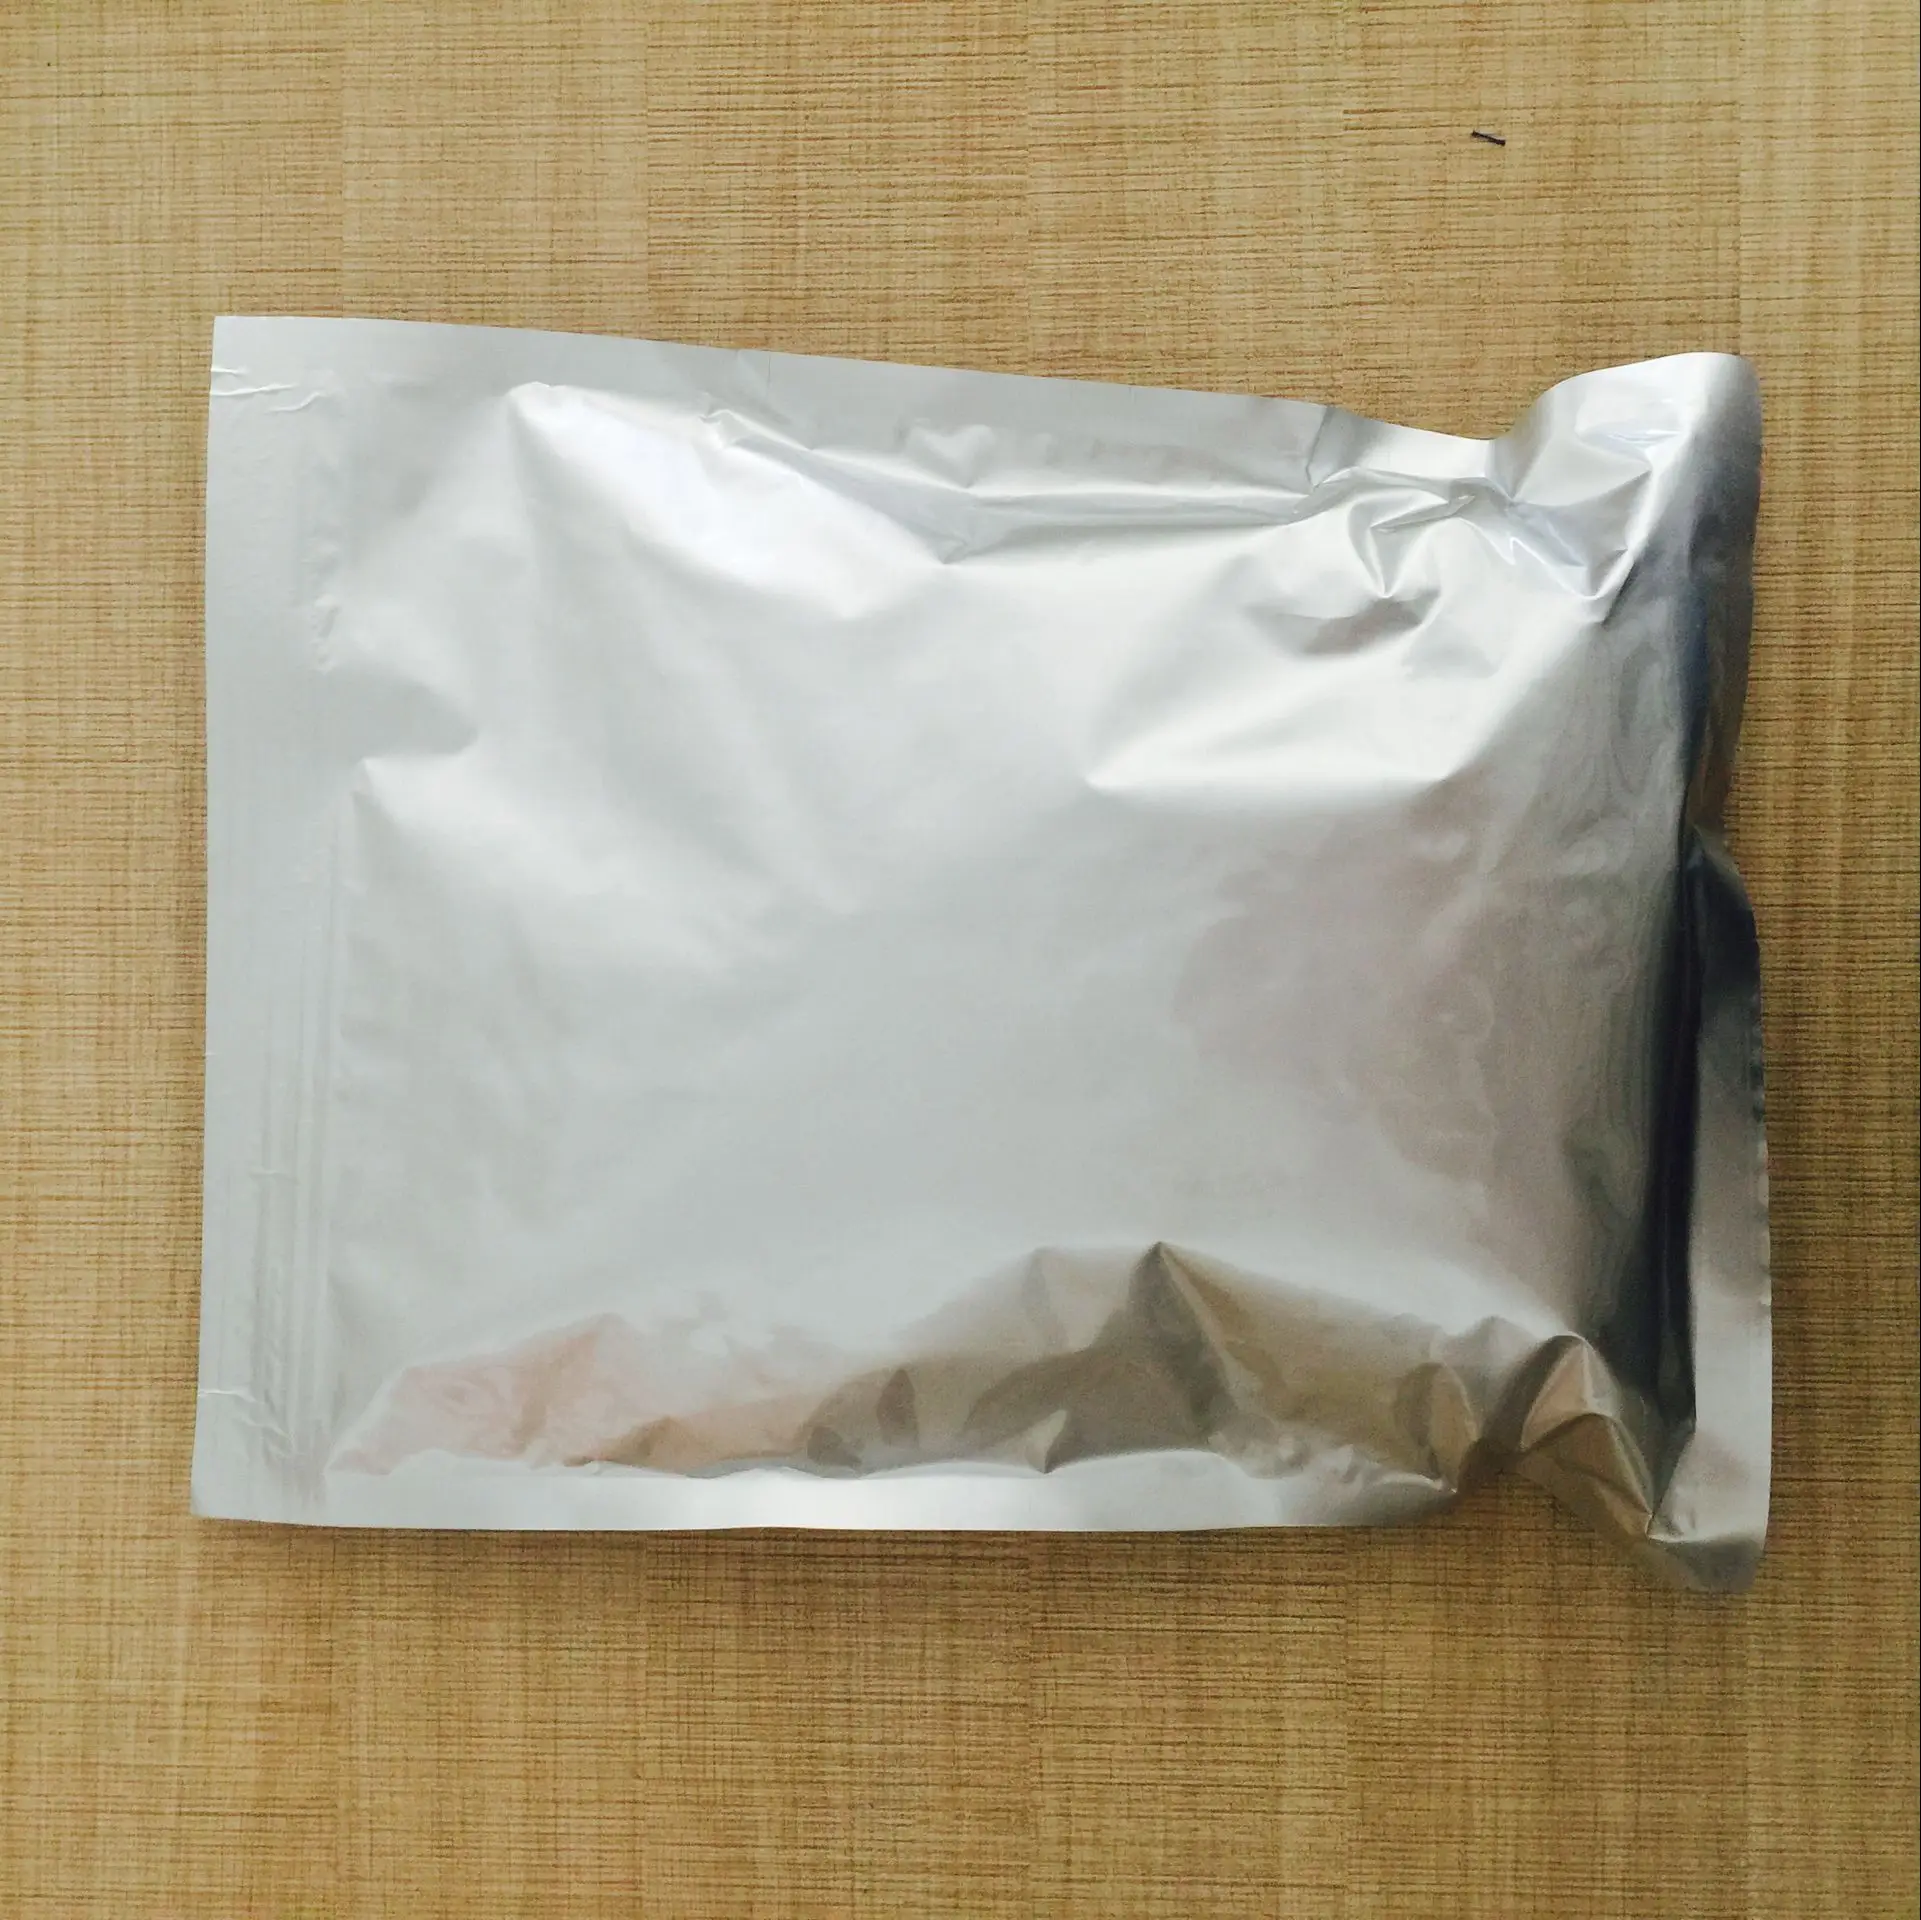 Erucamide plastic slip agent cis-13-Docosenoamide CAS 112-84-5